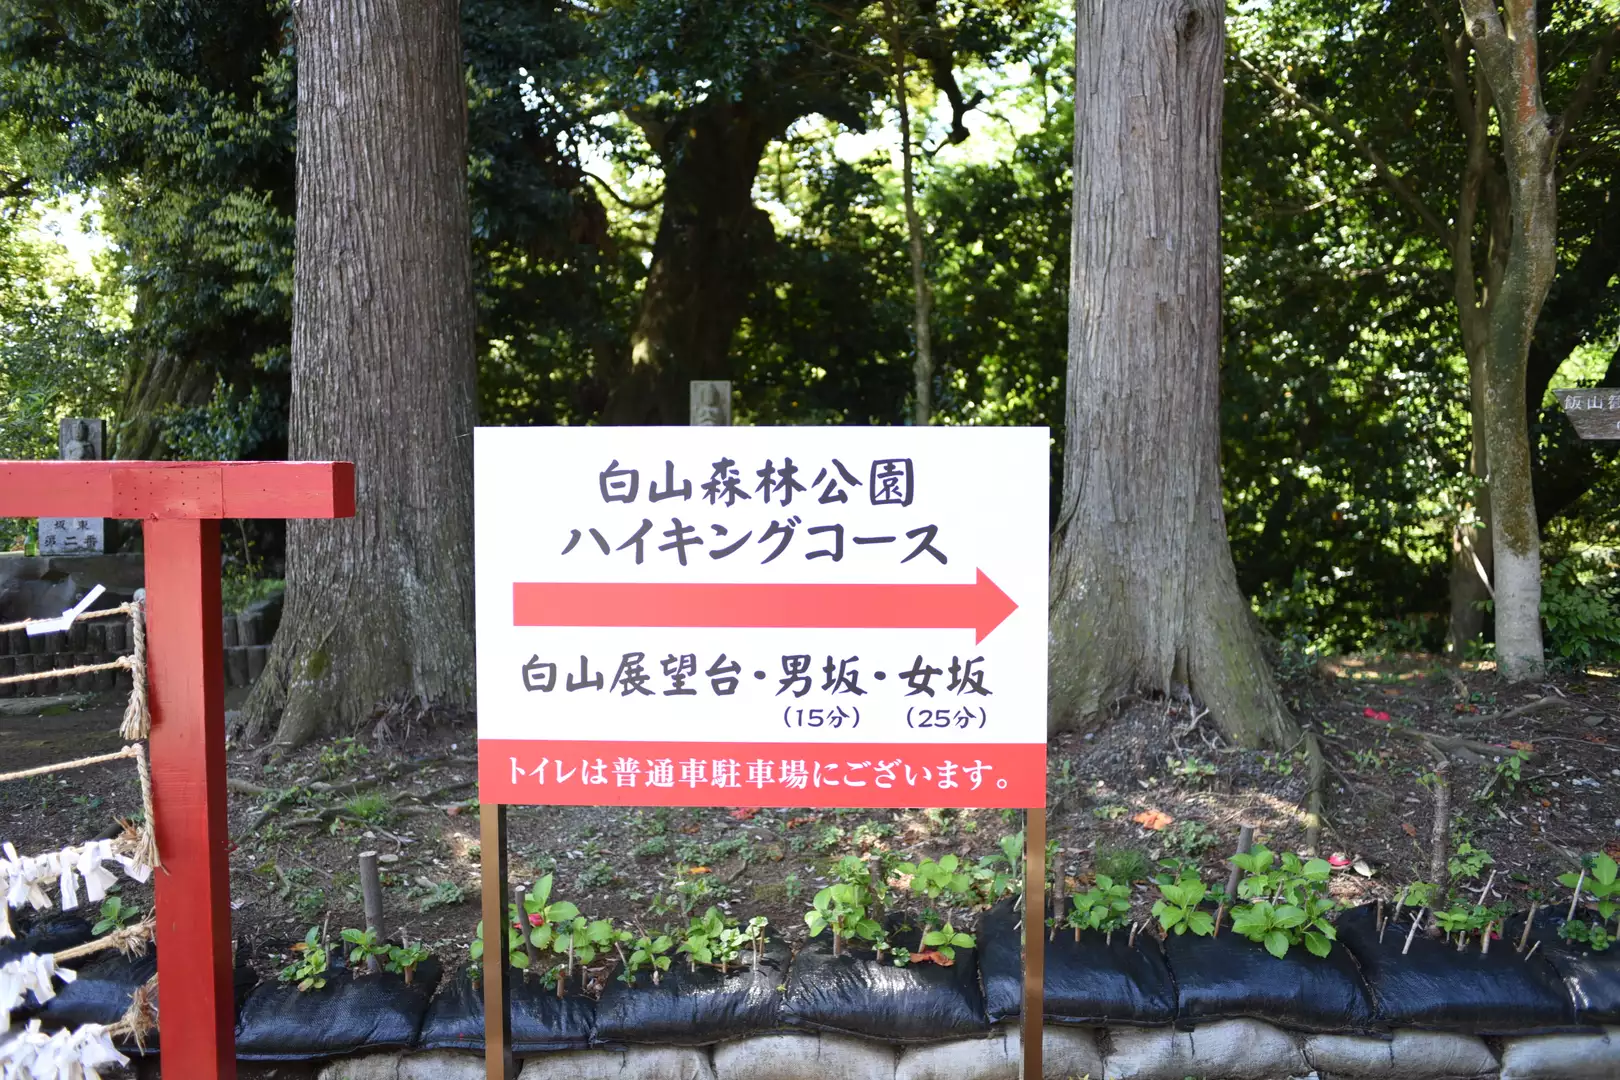 飯山白山森林公園 05 08 イチカワさんの丹沢山の活動データ Yamap ヤマップ